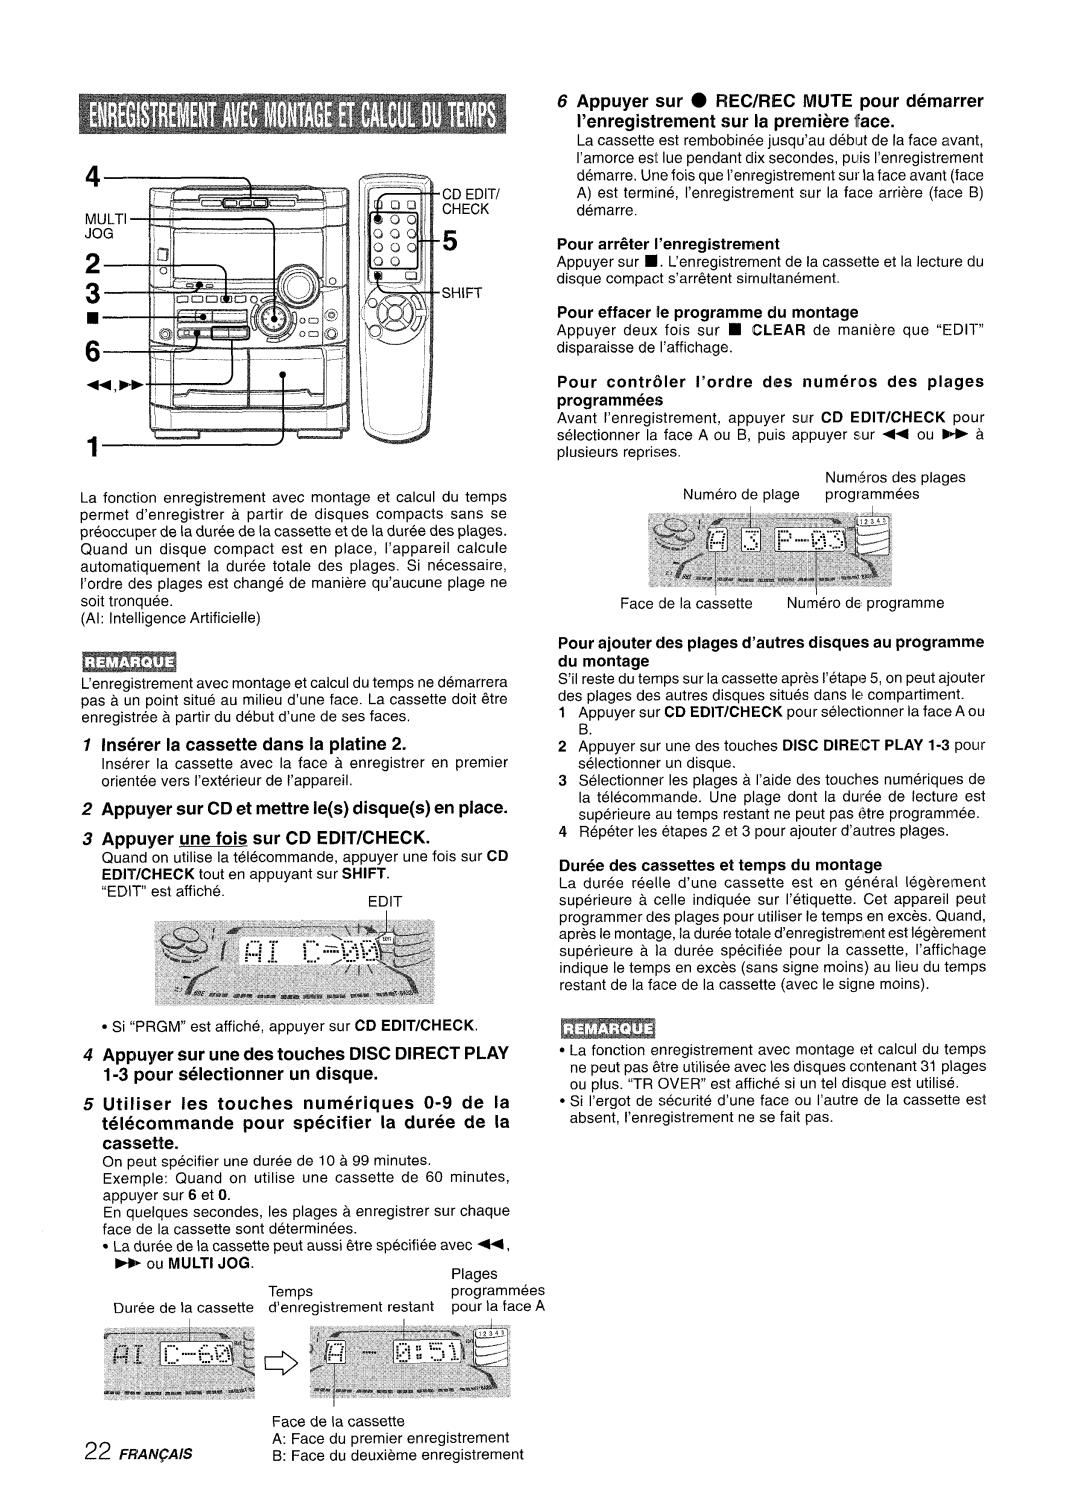 Sony NSX-A777 manual Appuyer sur REC/REC MUTE pour d6marrer, I’enregistrement sur la prelmiere Ikce, ou MULTI JOG 